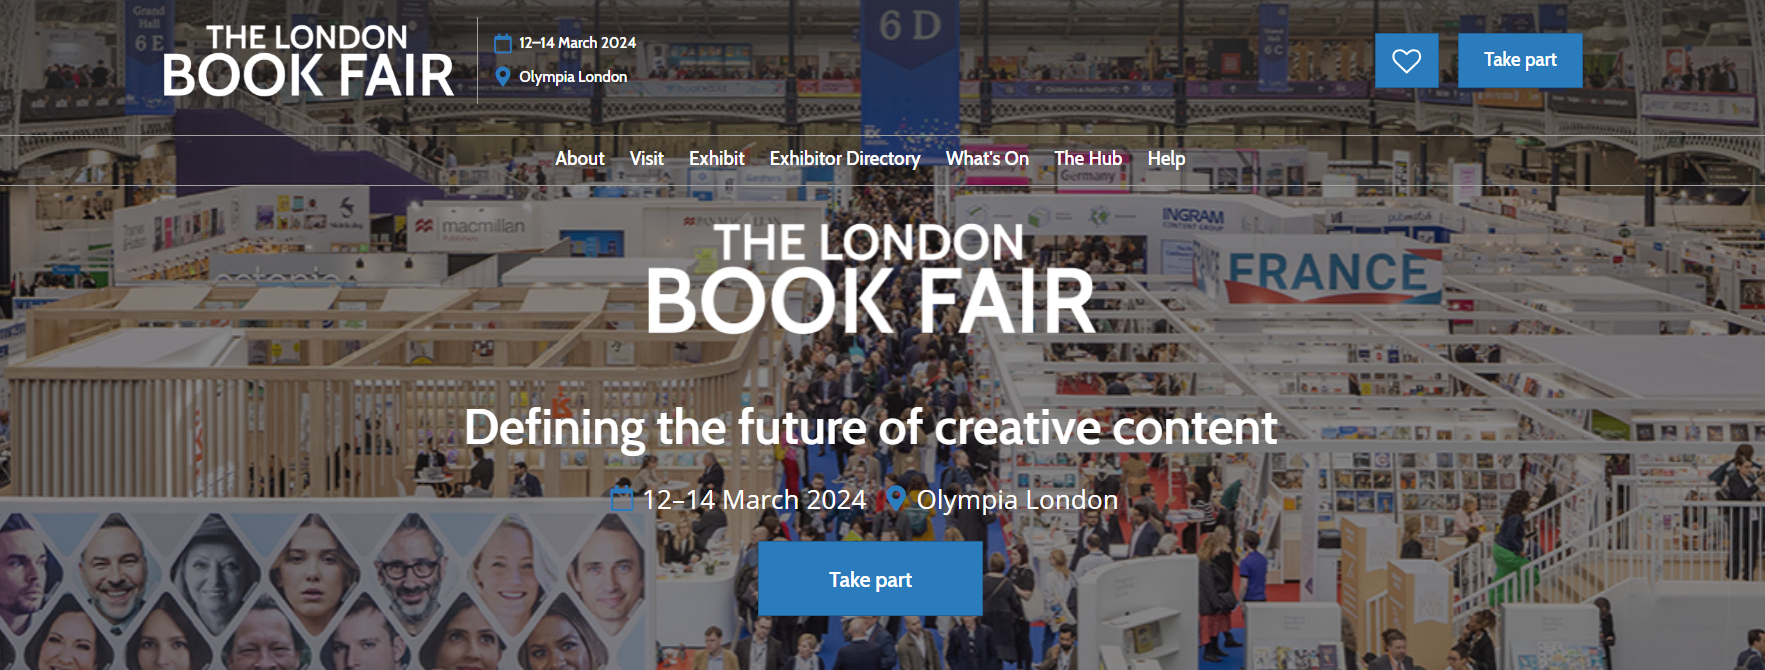 author conferences london book fair